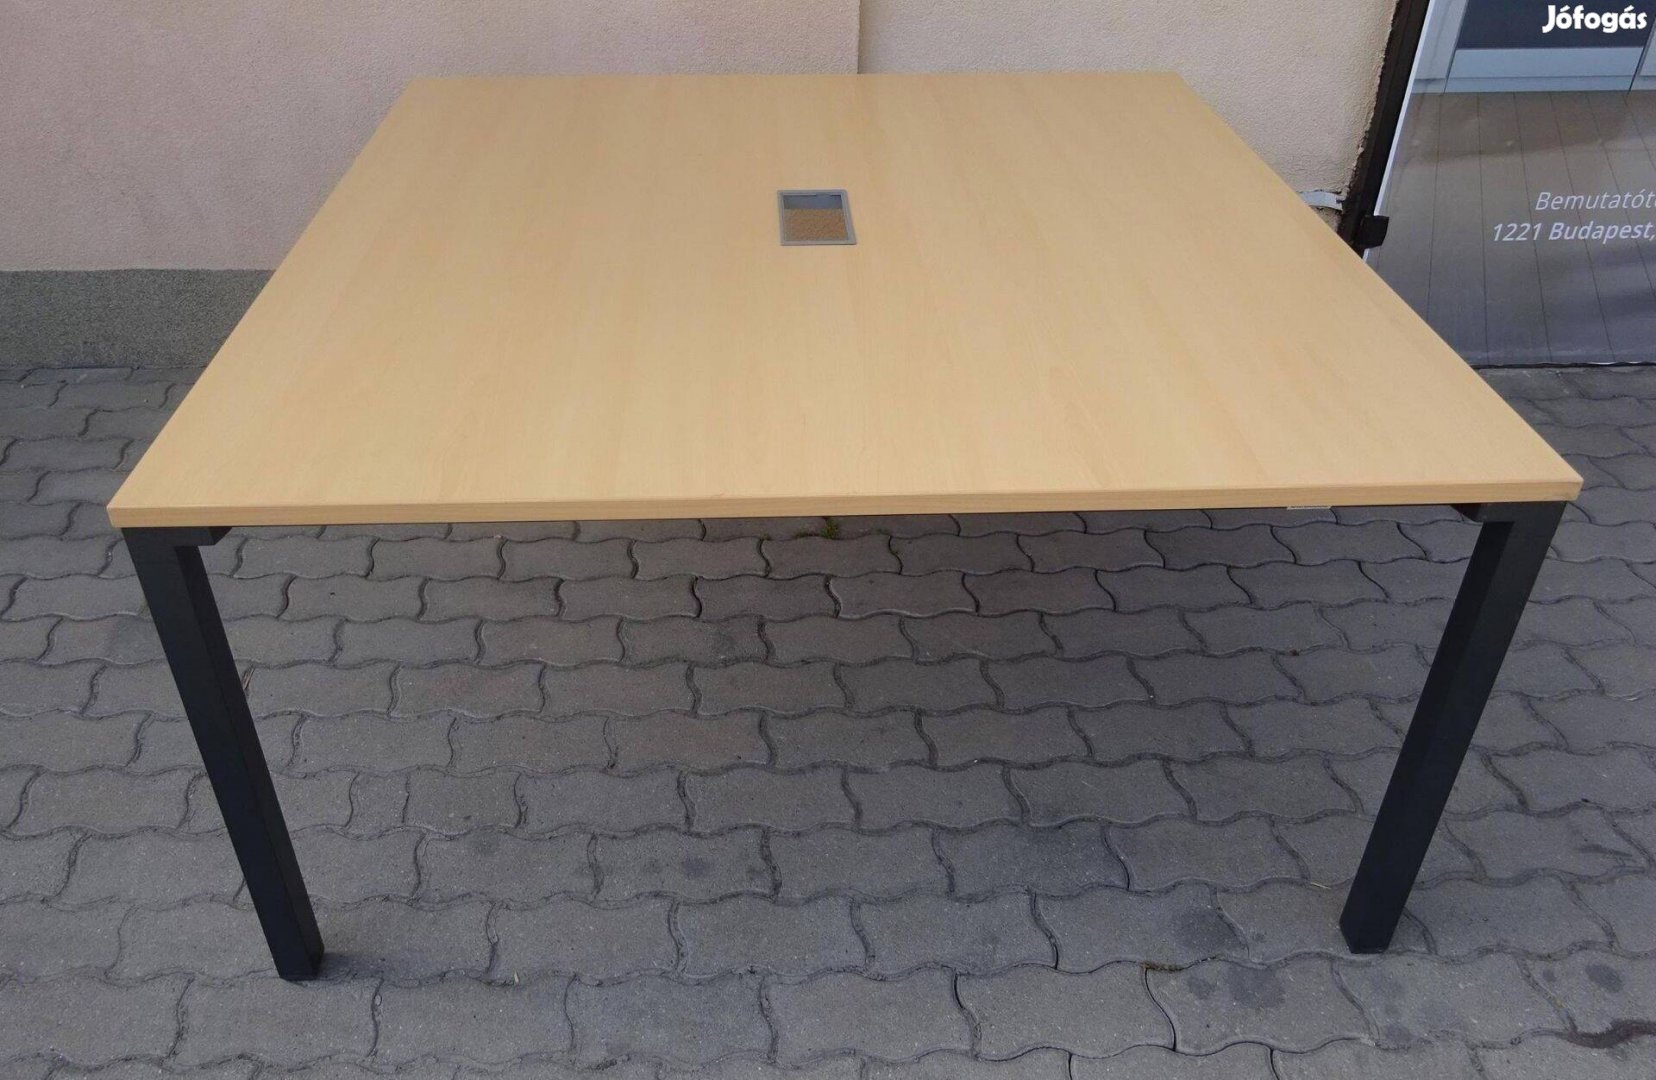 Steelcase tárgyalóasztal, konferencia asztal 140x140 cm - használt